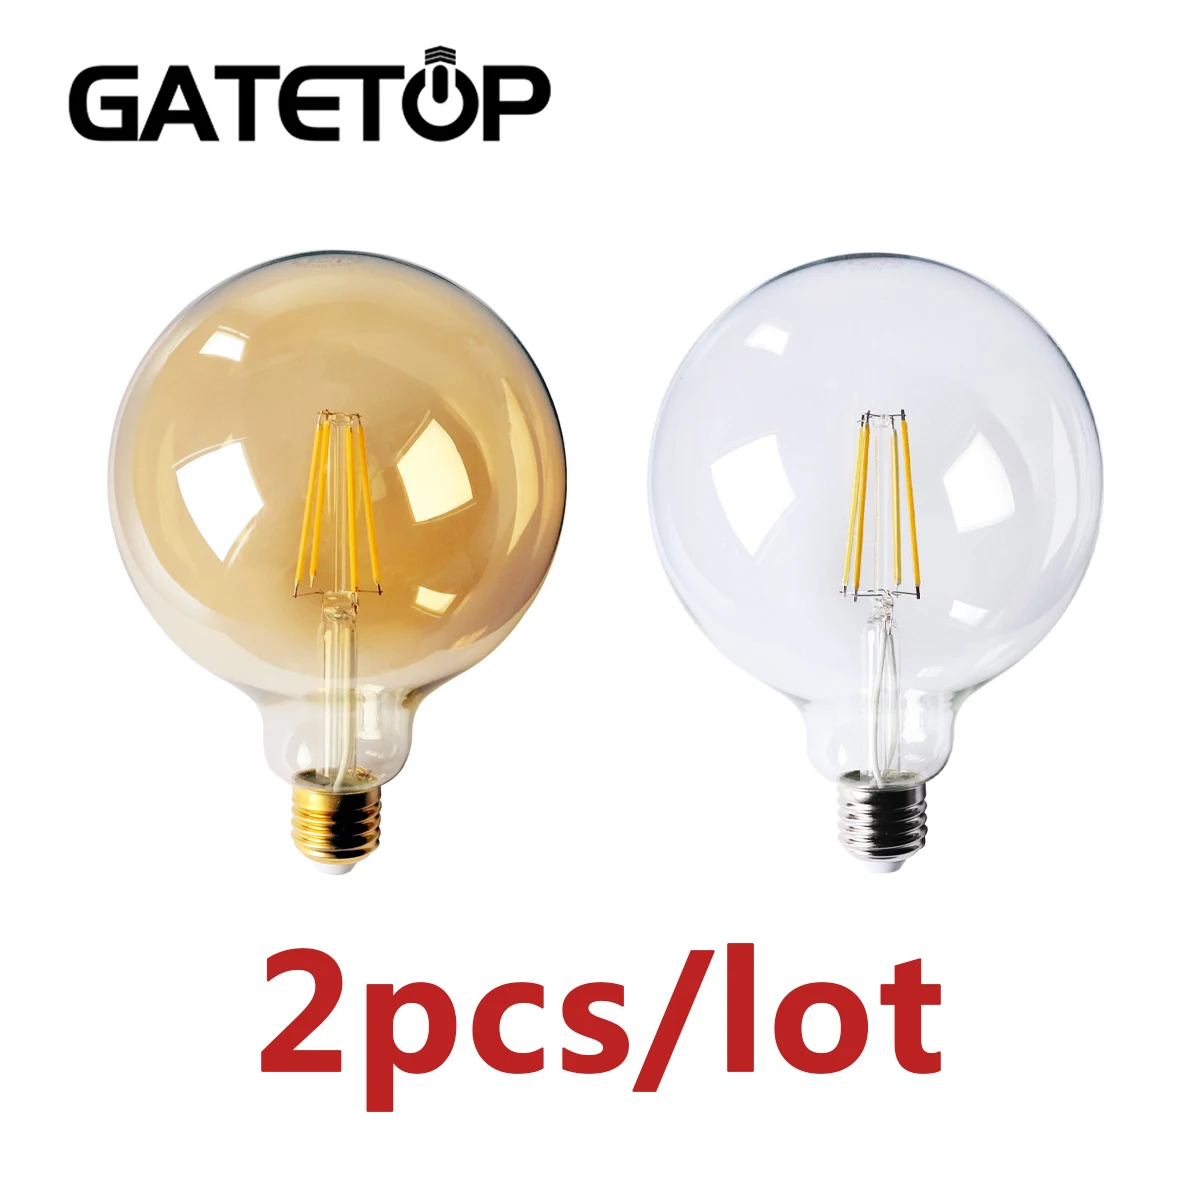 

Chrismas Decor 2pcs/lot Retro Edison LED Filament Bulb G125 8W 220-240V Gold Glass Global Bulb Home Decoration